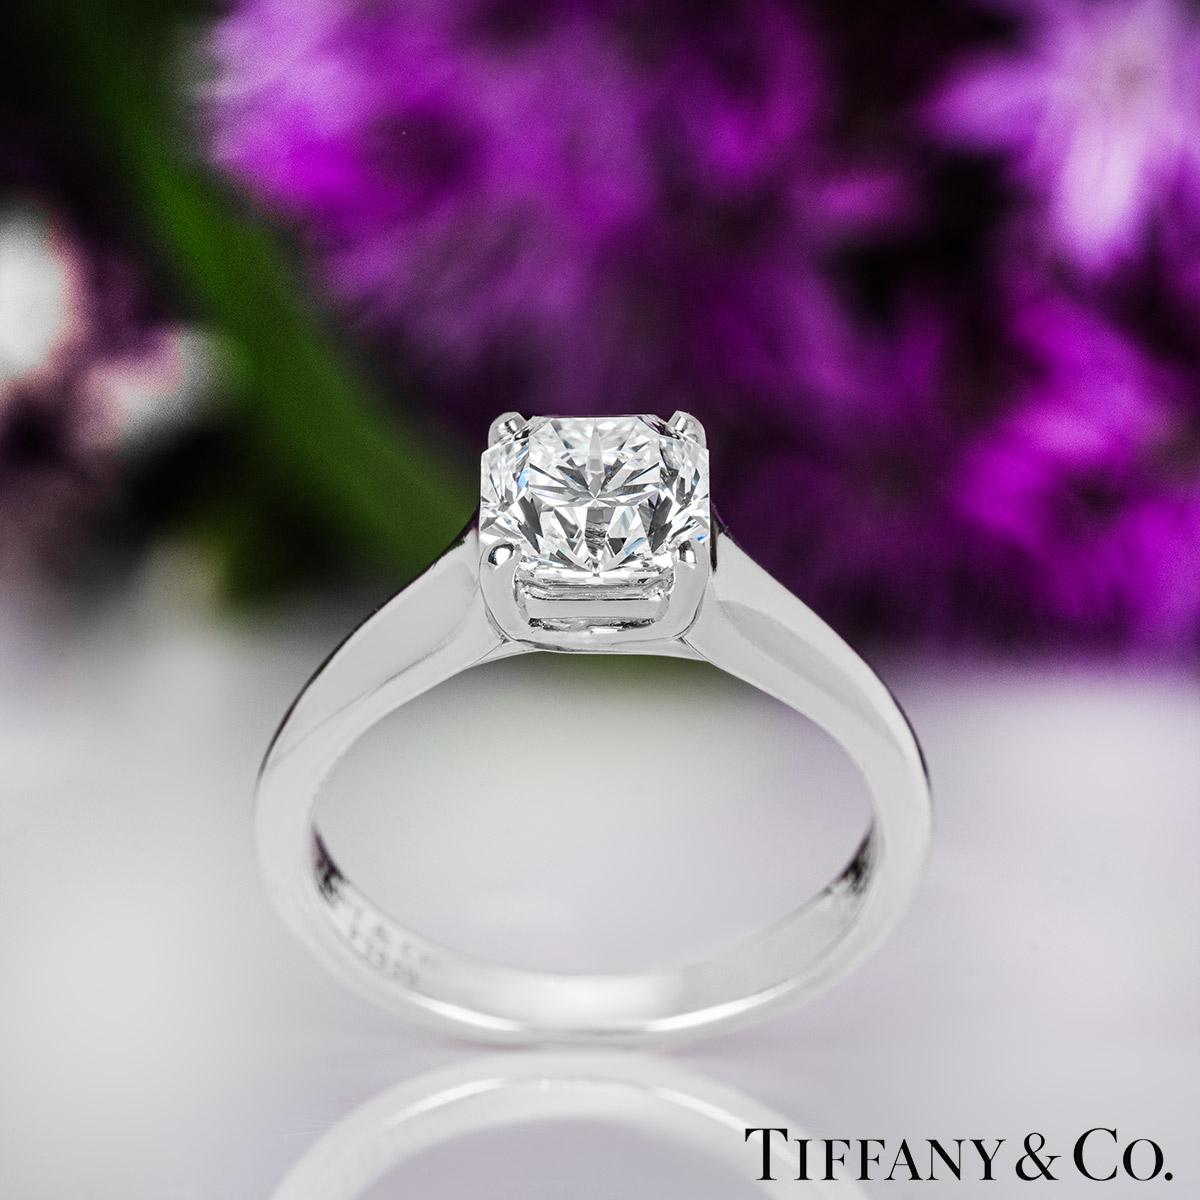 Tiffany & Co. Bague solitaire en diamant taille Lucida de 1,27 carat certifiée GIA 2